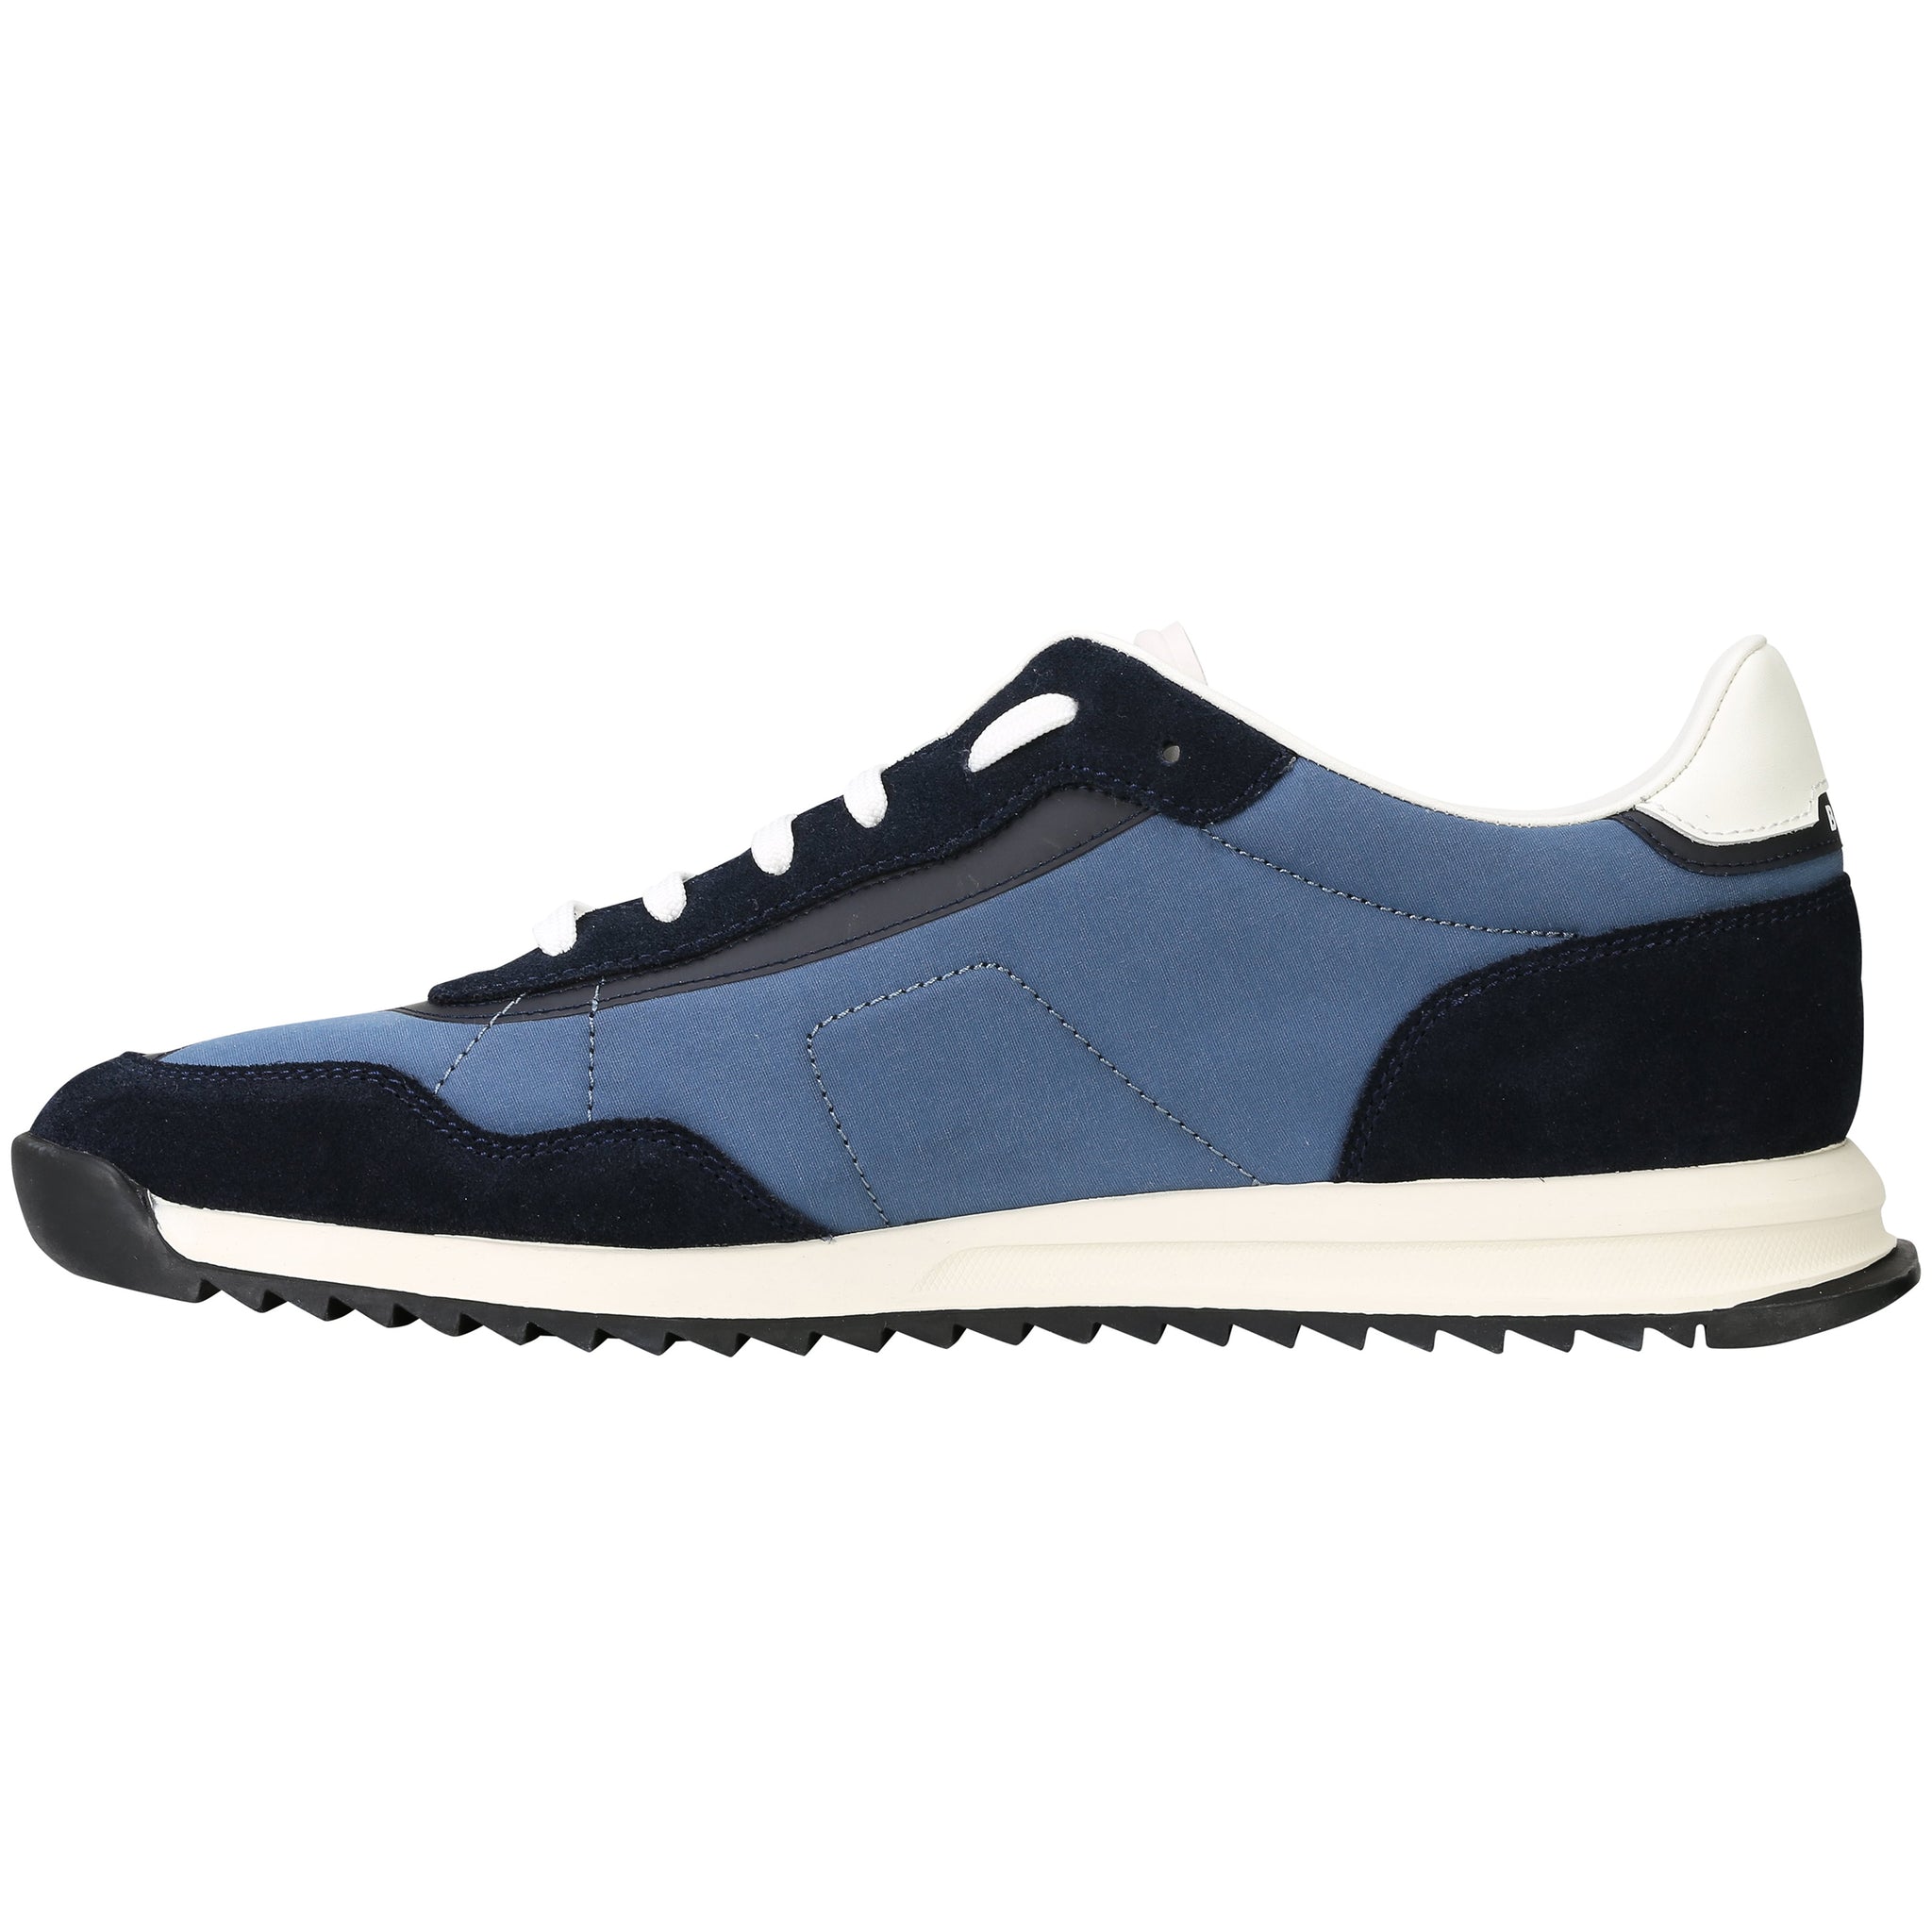 BOSS Zayn_Low Shoes 50498891 Dark Blue 401 | Function18 | Restrictedgs